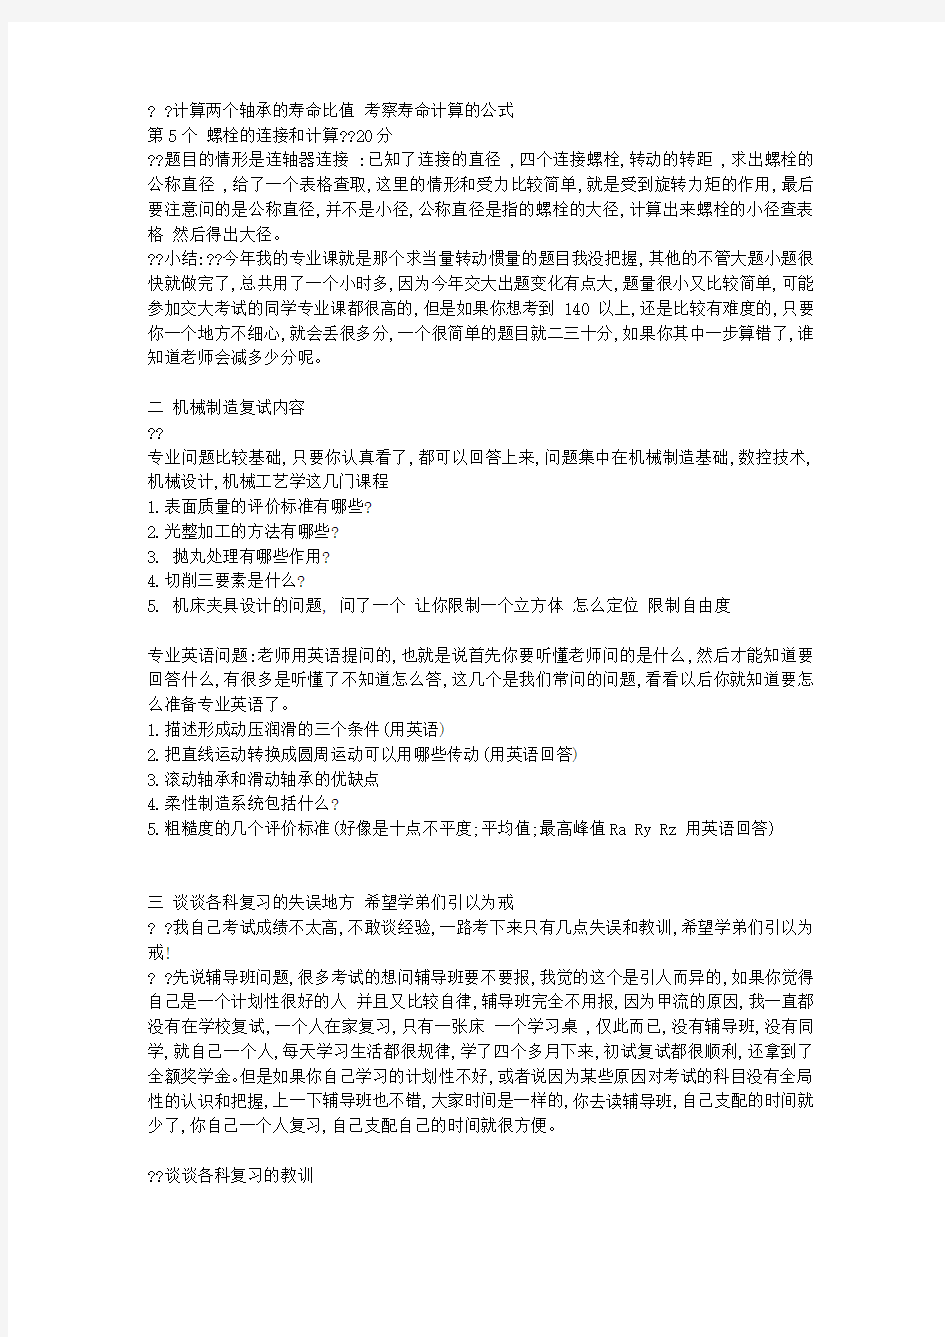 上海交通大学机械考研(10真题回忆+复试题目回忆+各科复习思路)